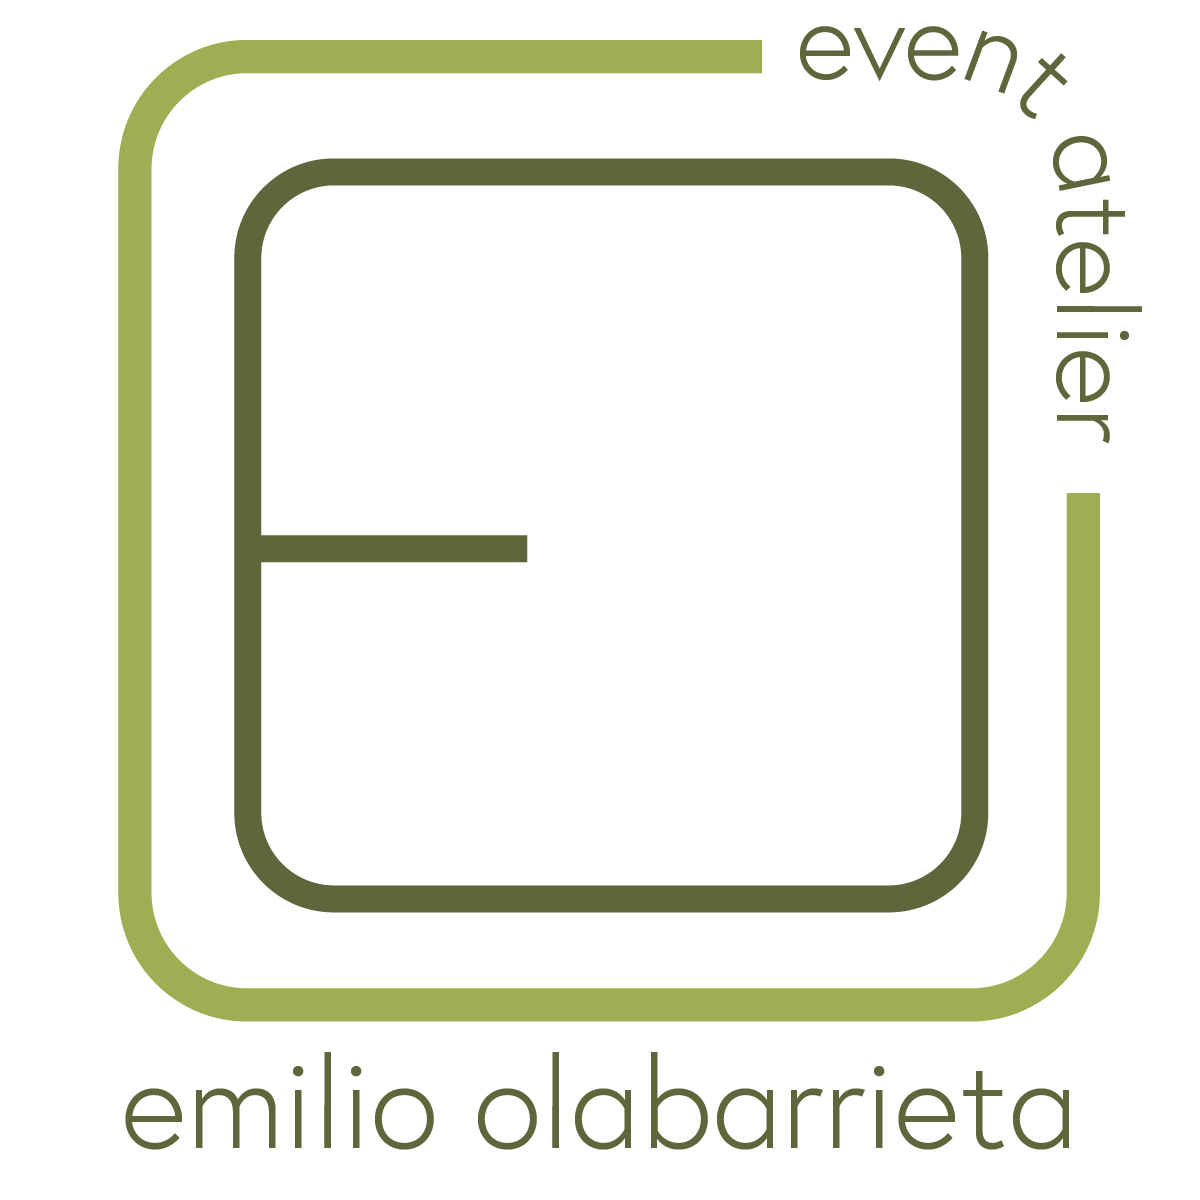 Emilio Olabarrieta | event atelier